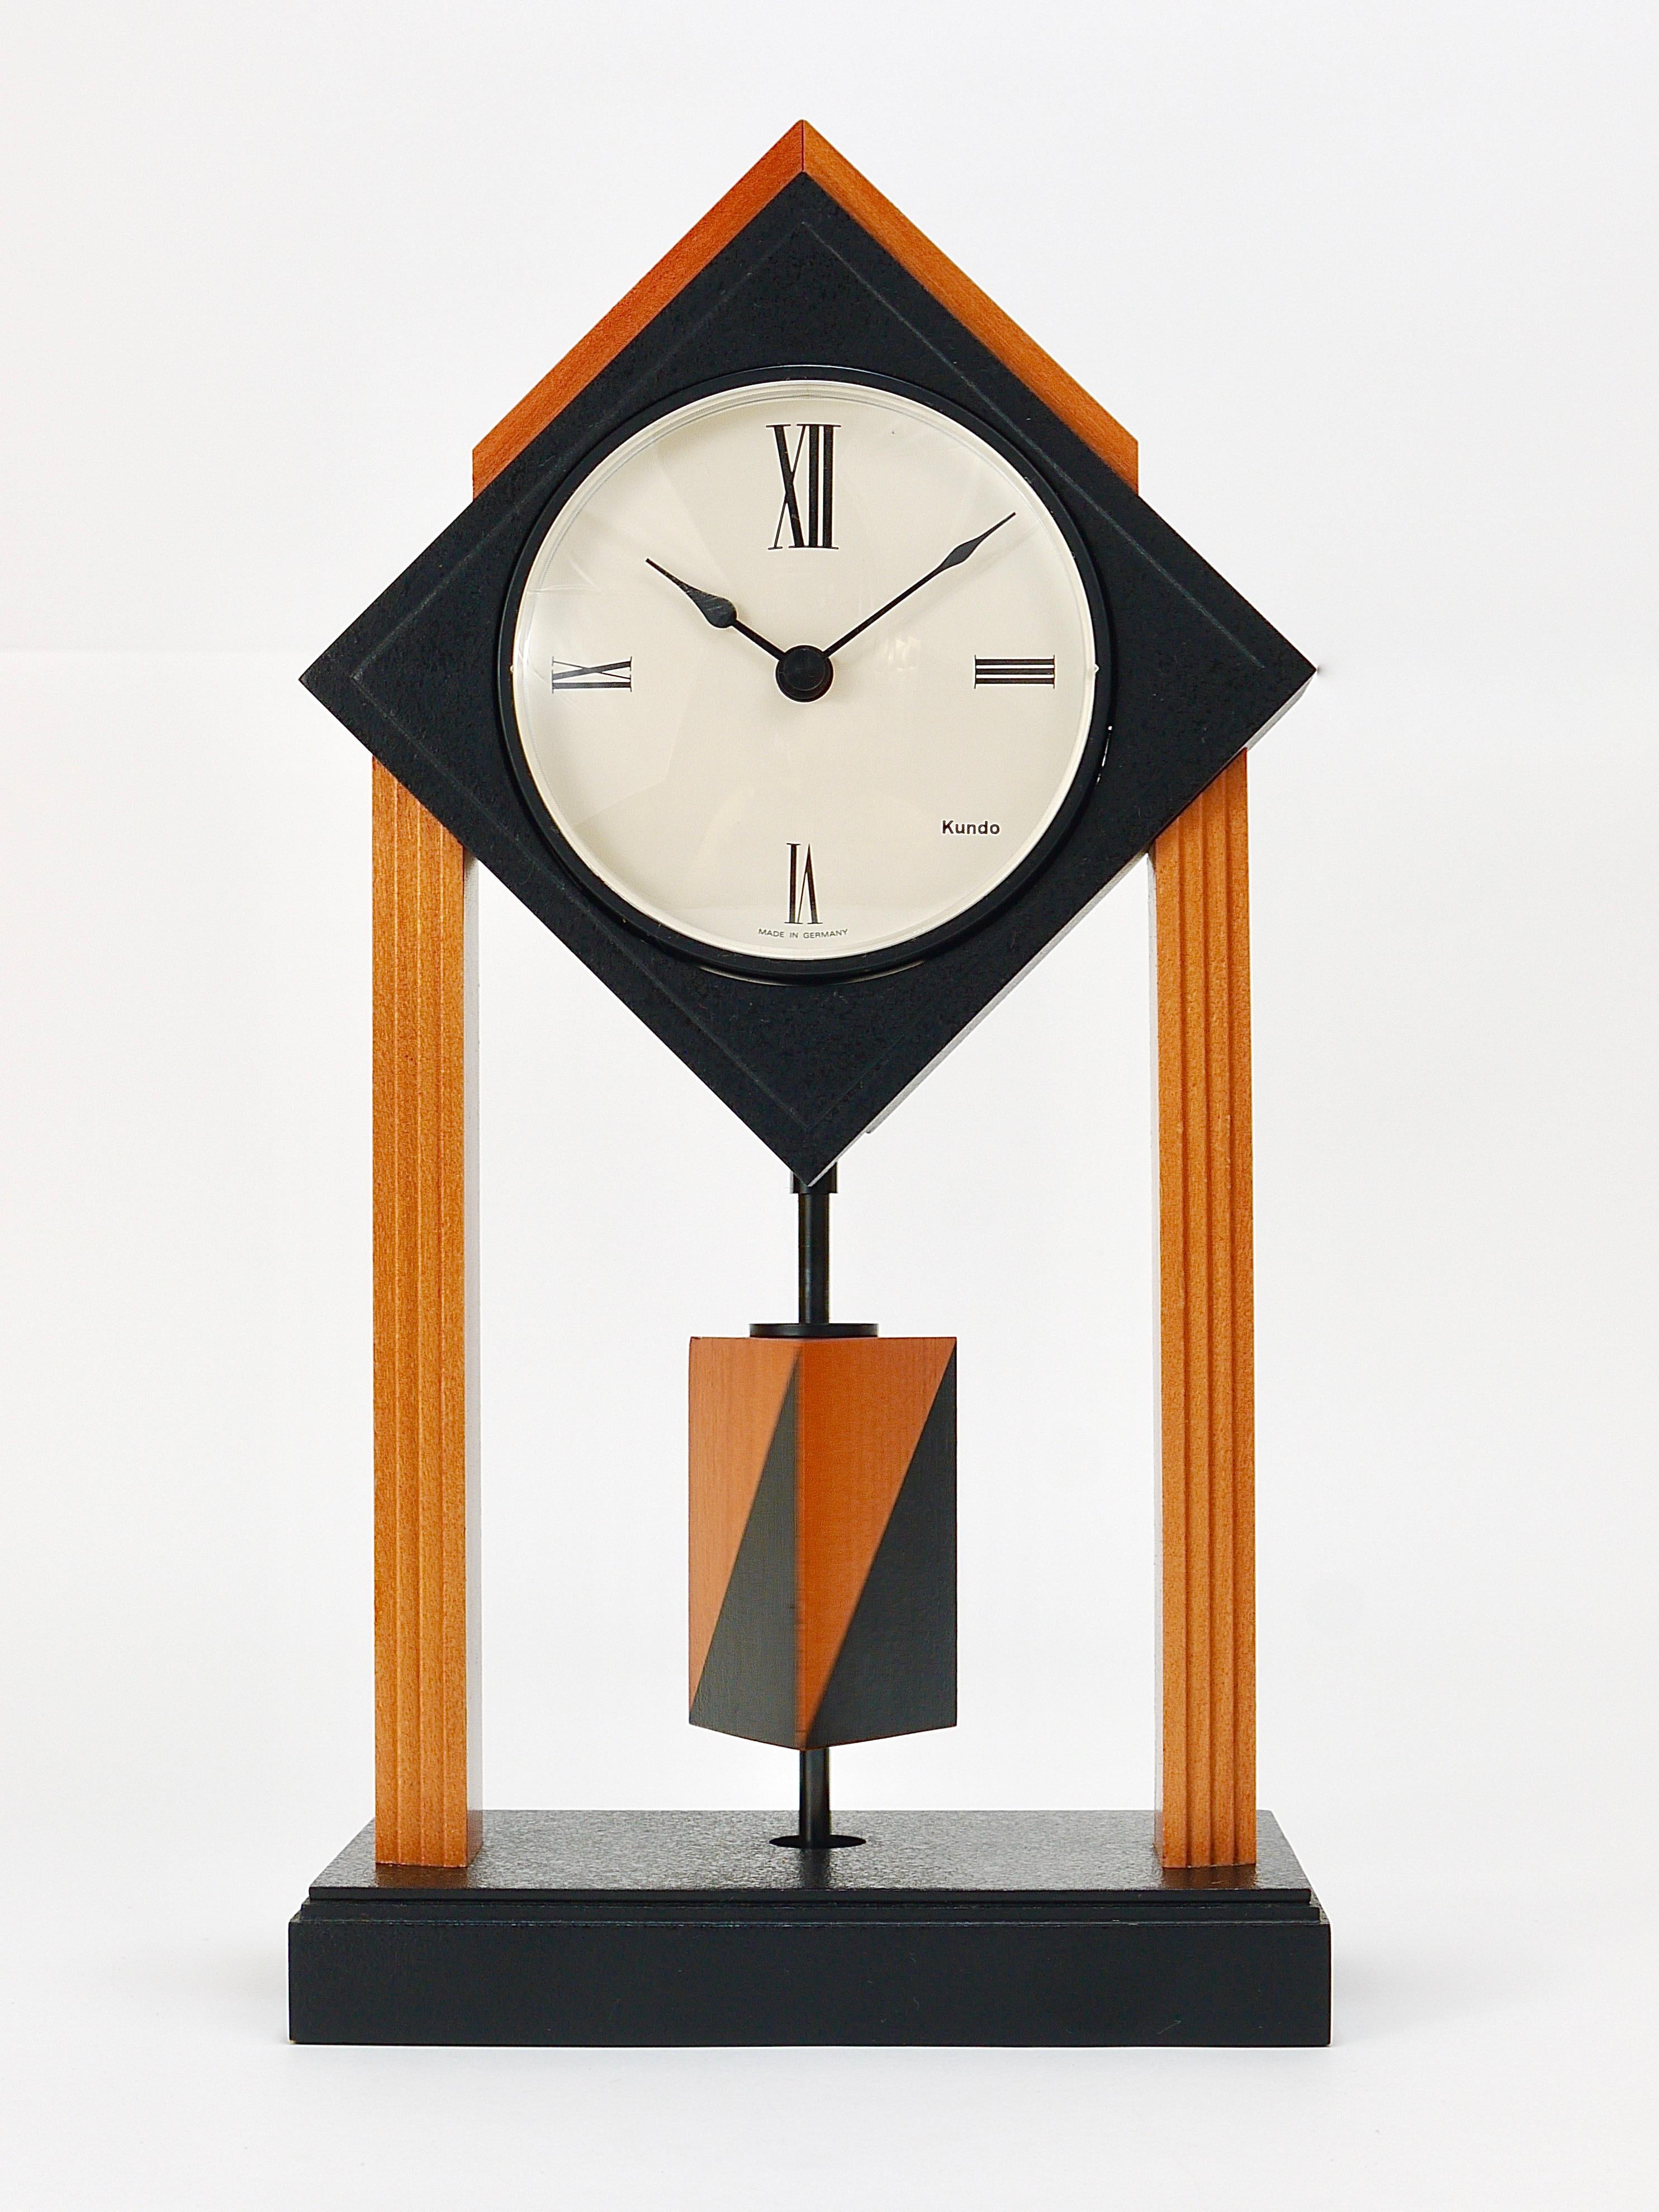 Magnifique horloge de bureau ou de table de style post-moderne Memphis avec un pendule triangulaire rotatif. Exécuté par Kundo Germany dans les années 1980. 
En bois laqué naturel et noir, avec un beau cadran d'horloge et de belles aiguilles